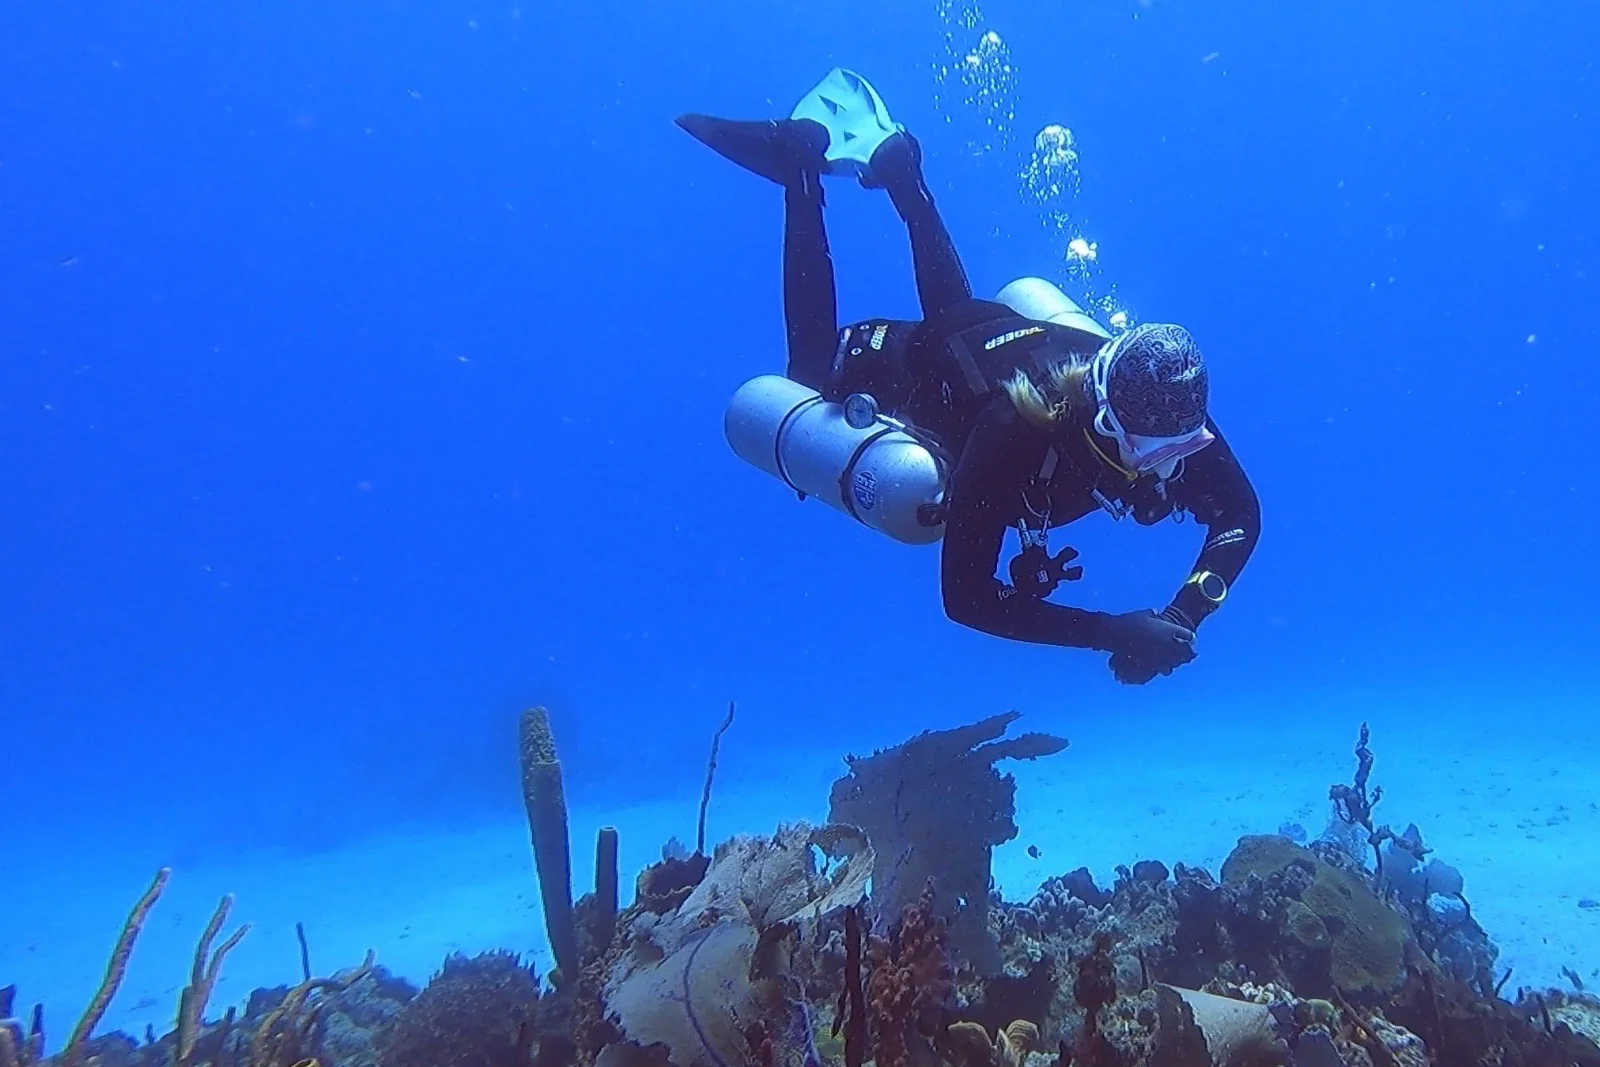 Sidemount diving